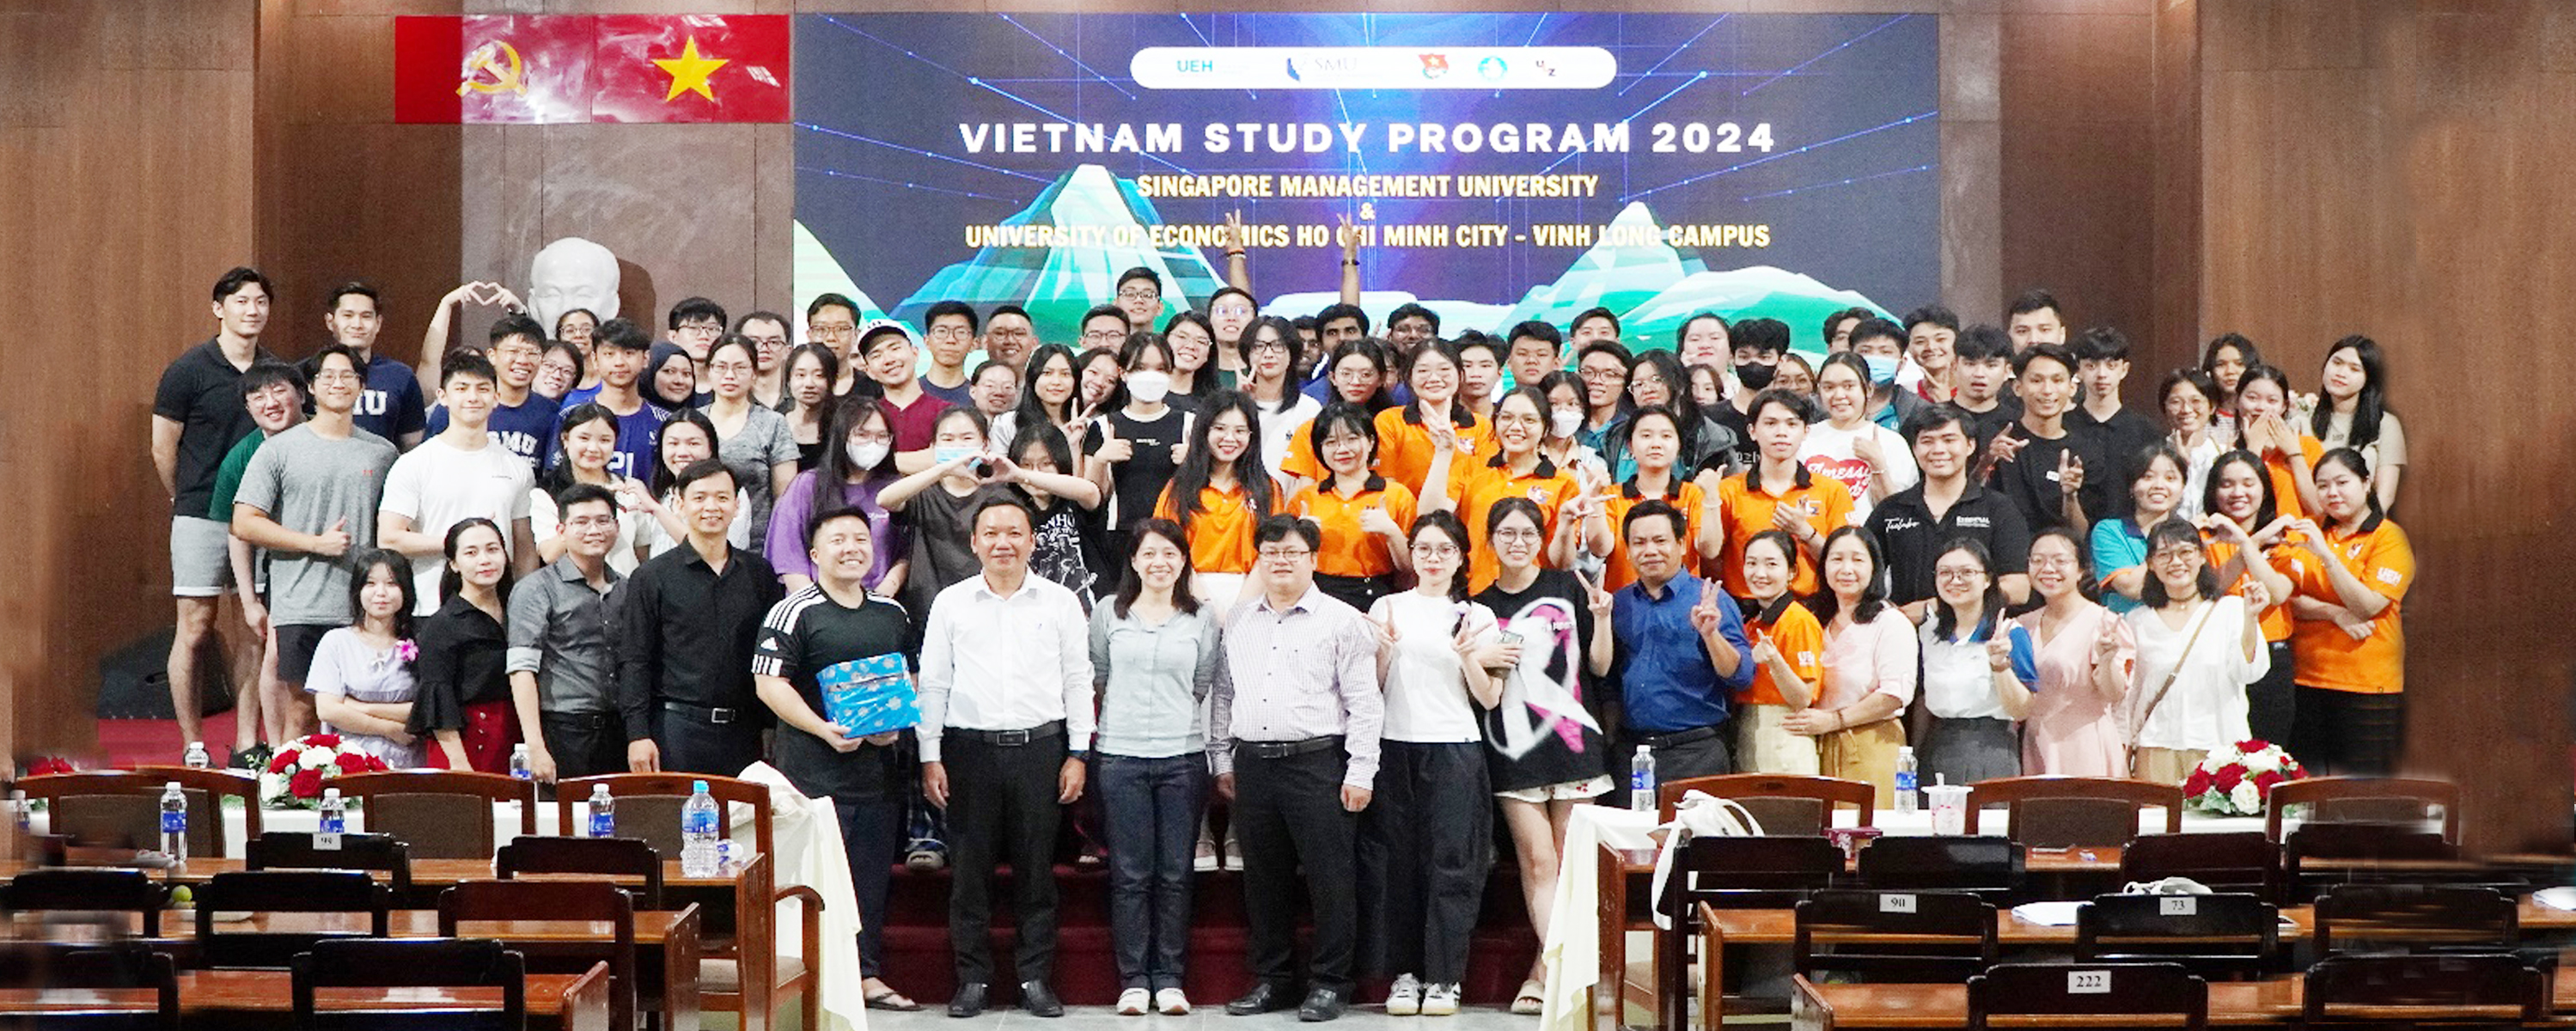 UEH tổ chức chương trình giao lưu sinh viên quốc tế Trường Đại học quản lí Singapore (SMU) với sinh viên Phân hiệu Vĩnh Long (PHVL)

